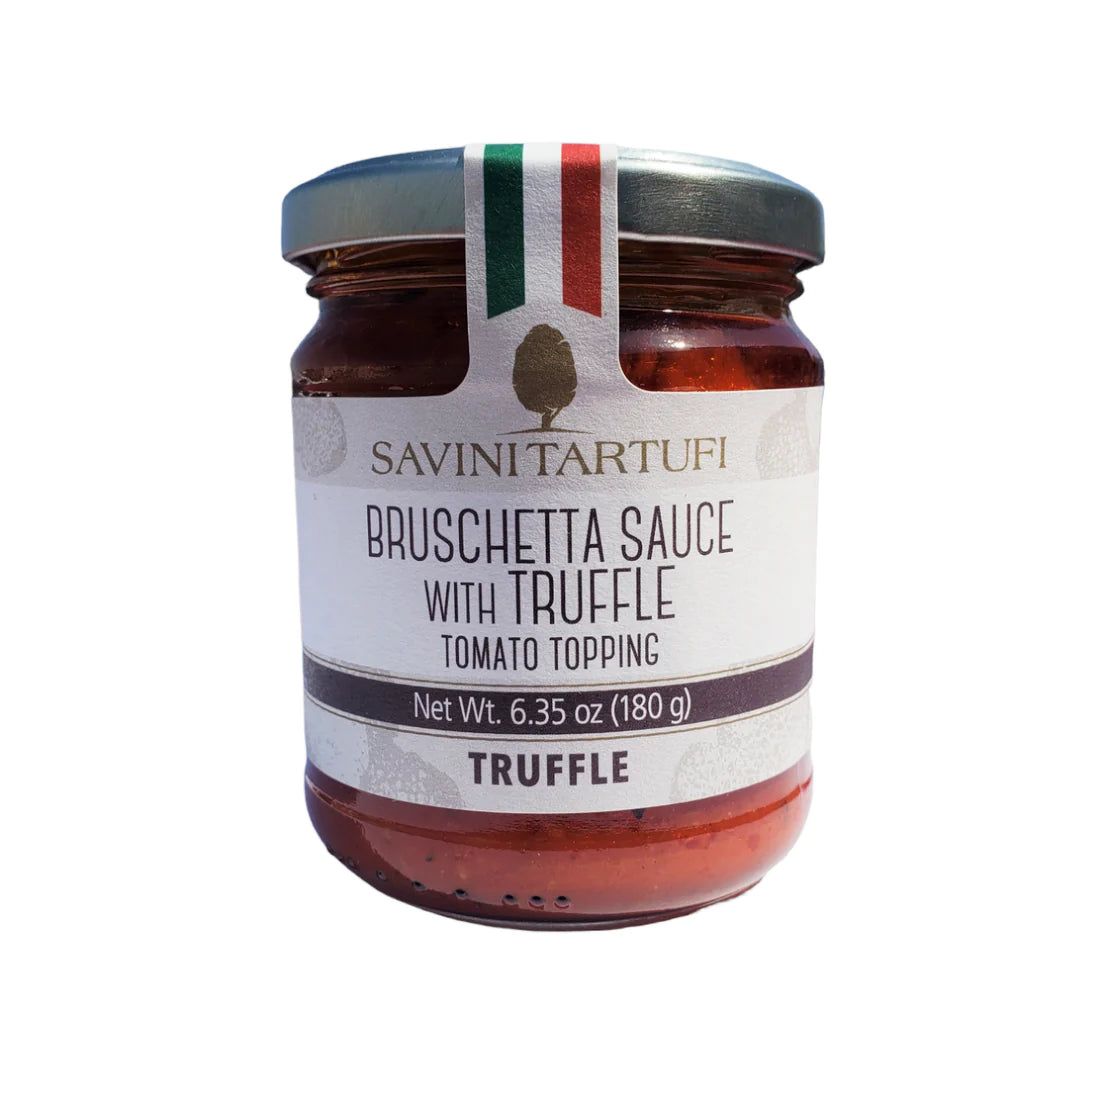 "Bruschetta con Tartufo" Bruschetta Sauce with Summer Truffle by Savini Tartufi